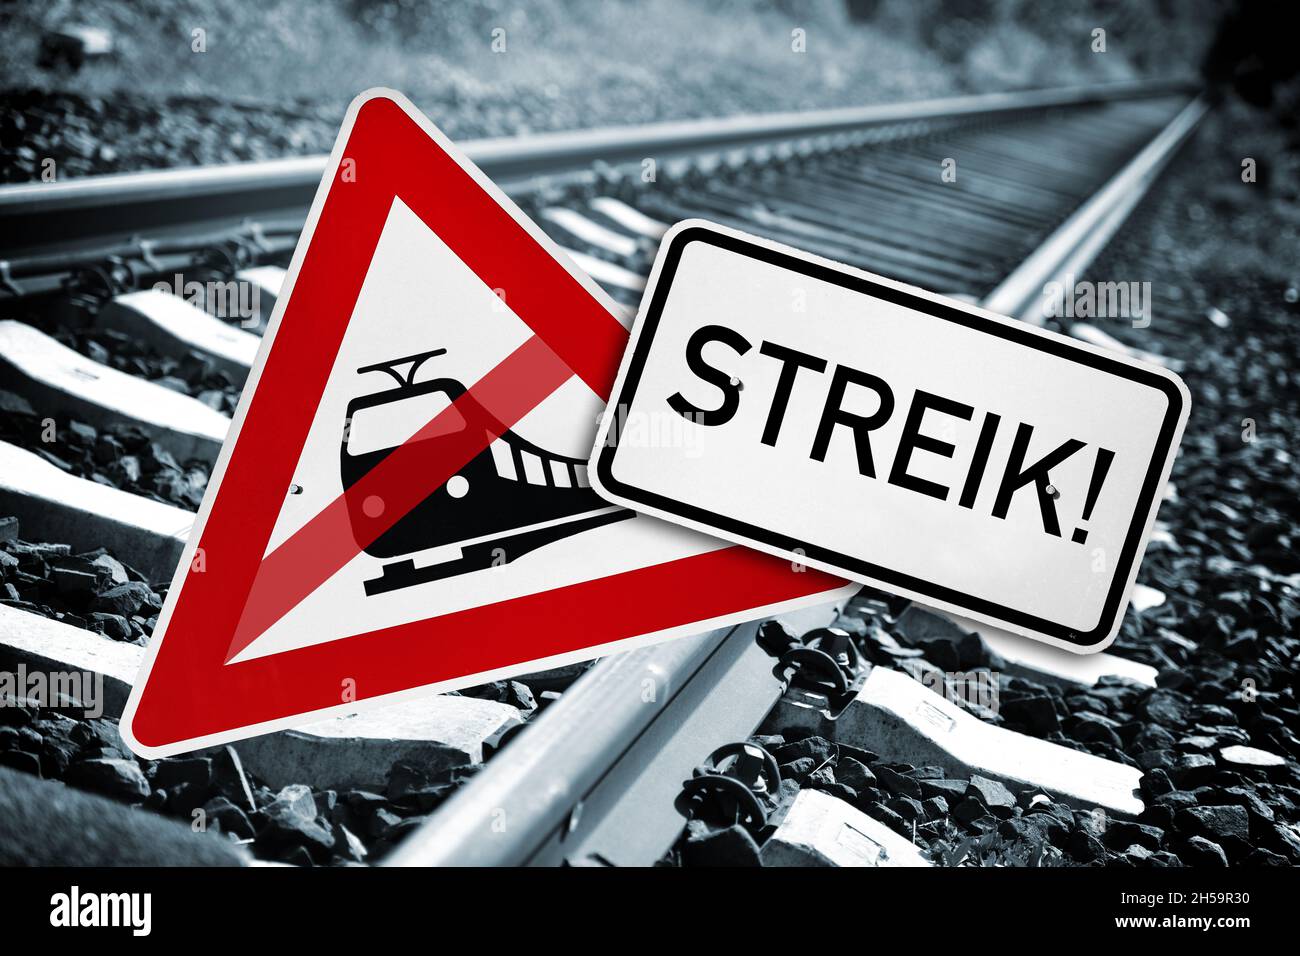 FOTOMONTAGE, Durchgestrichenes Verkehrsschild Bahnübergang und Schild mit Aufschrift Streik vor leeren Bahngleisen, Symbolfoto Bahnstreik Stock Photo